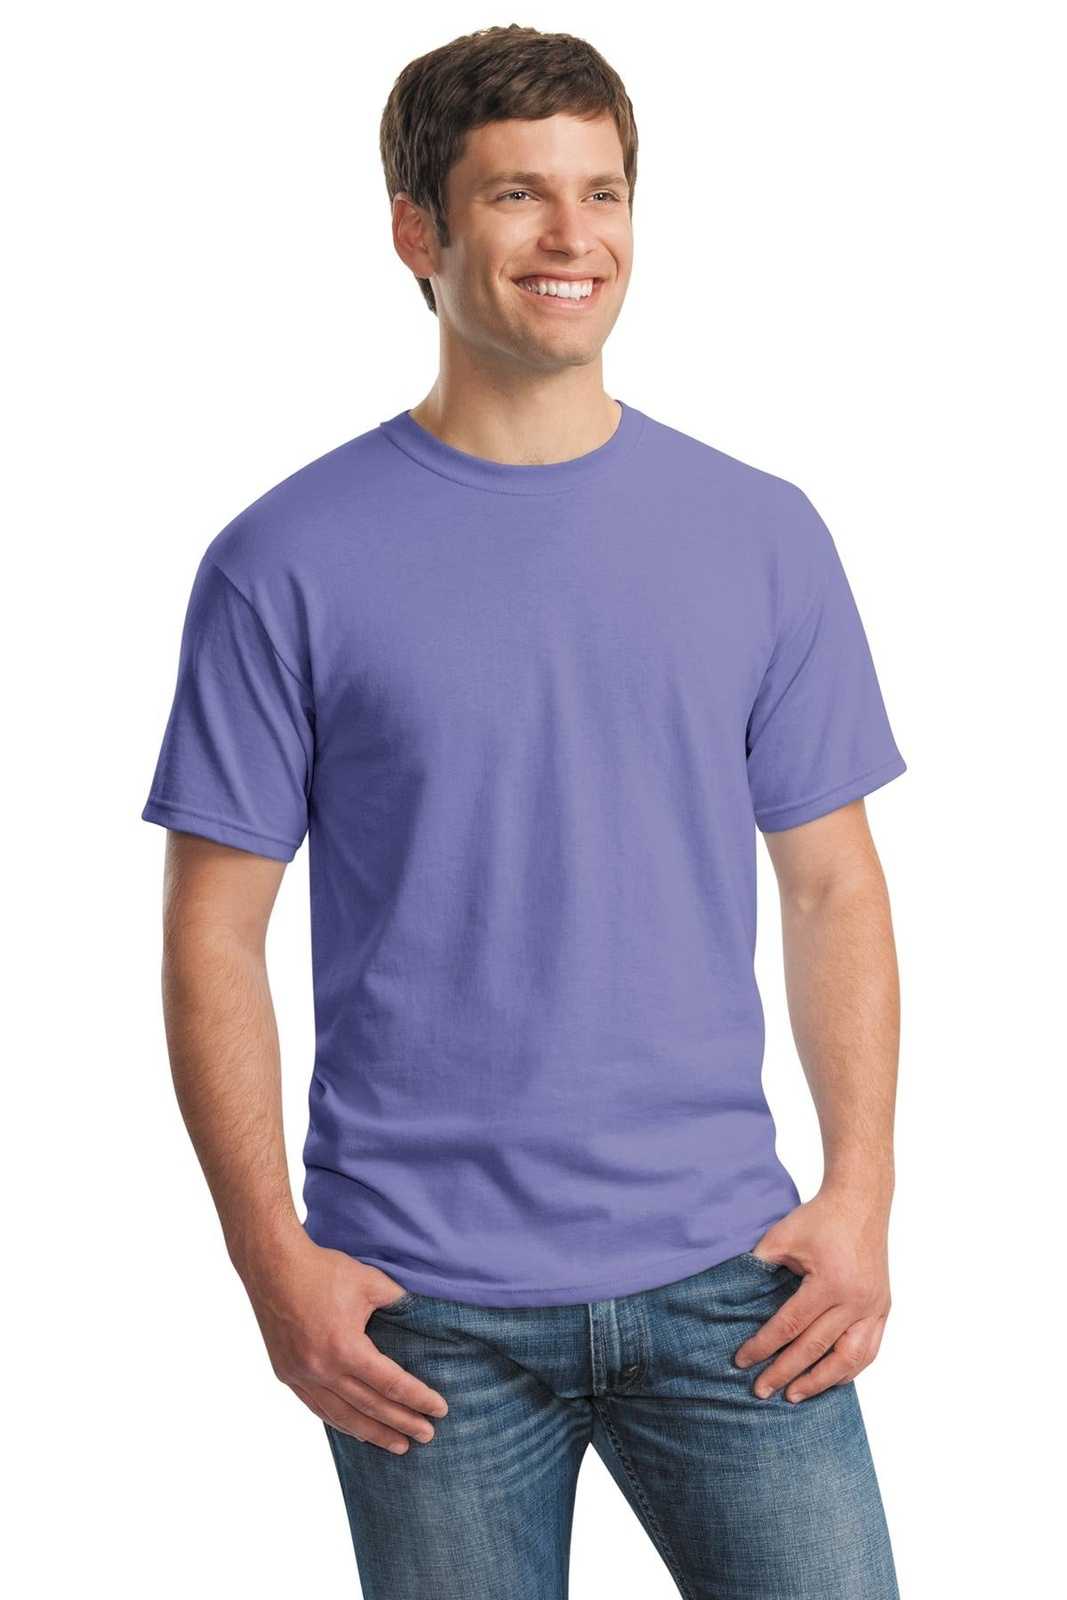 Gildan 5000 Heavy Cotton 100% Cotton T-Shirt - Violet - HIT a Double